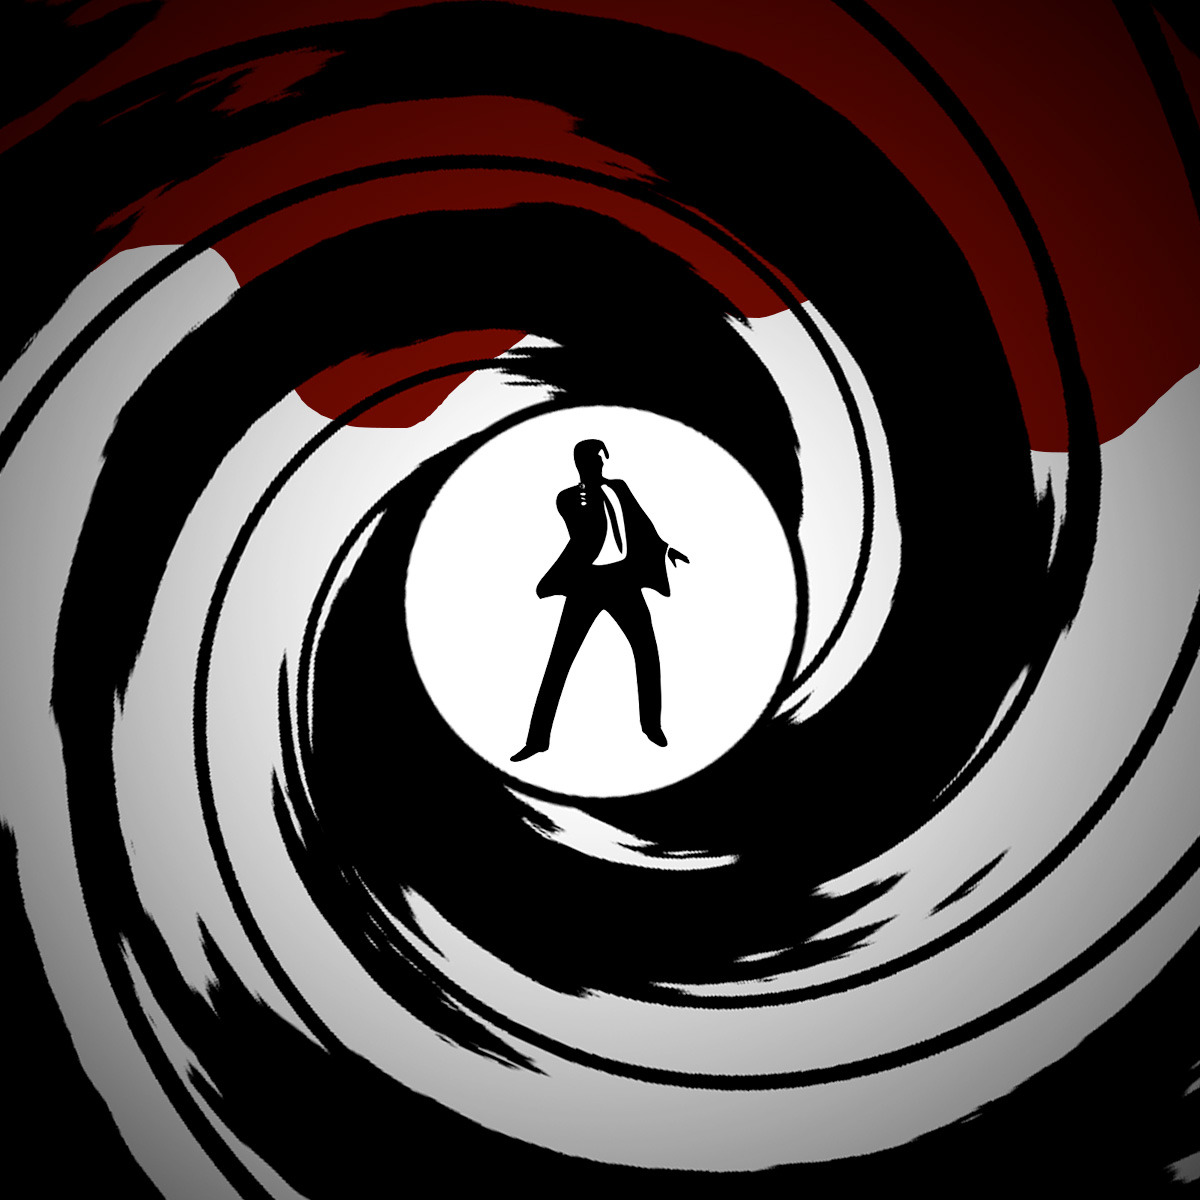 james bond 007 fondo de pantalla,circulo,fotografía,en blanco y negro,diseño gráfico,gráficos